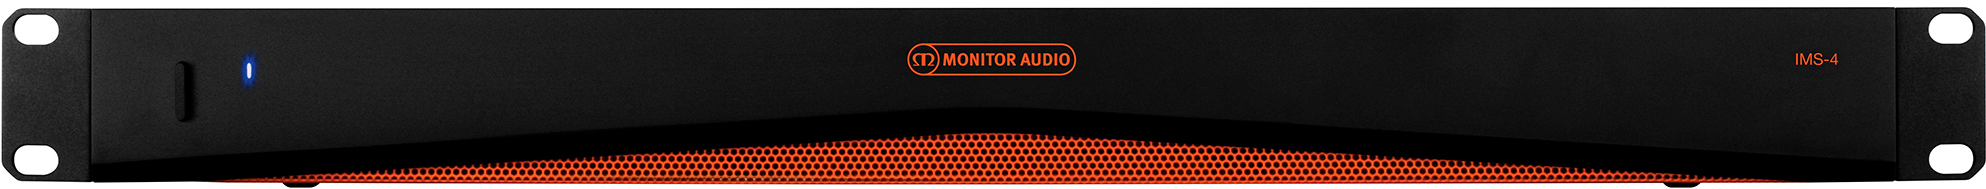 Monitor Audio IMS-4 с крепёжными ушами